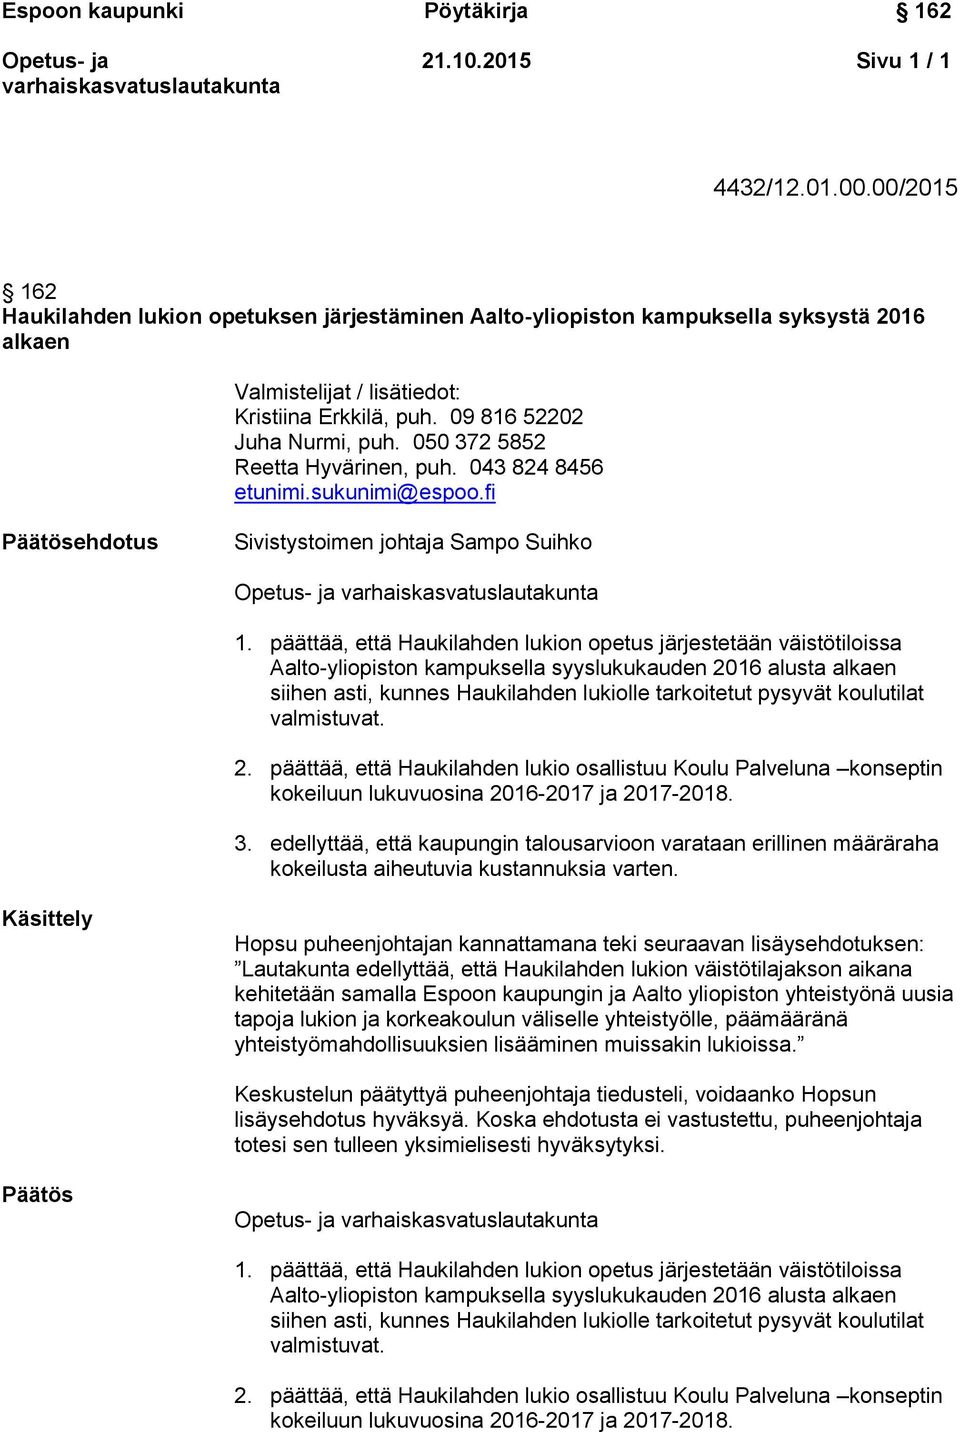 päättää, että Haukilahden lukion opetus järjestetään väistötiloissa Aalto-yliopiston kampuksella syyslukukauden 2016 alusta alkaen siihen asti, kunnes Haukilahden lukiolle tarkoitetut pysyvät